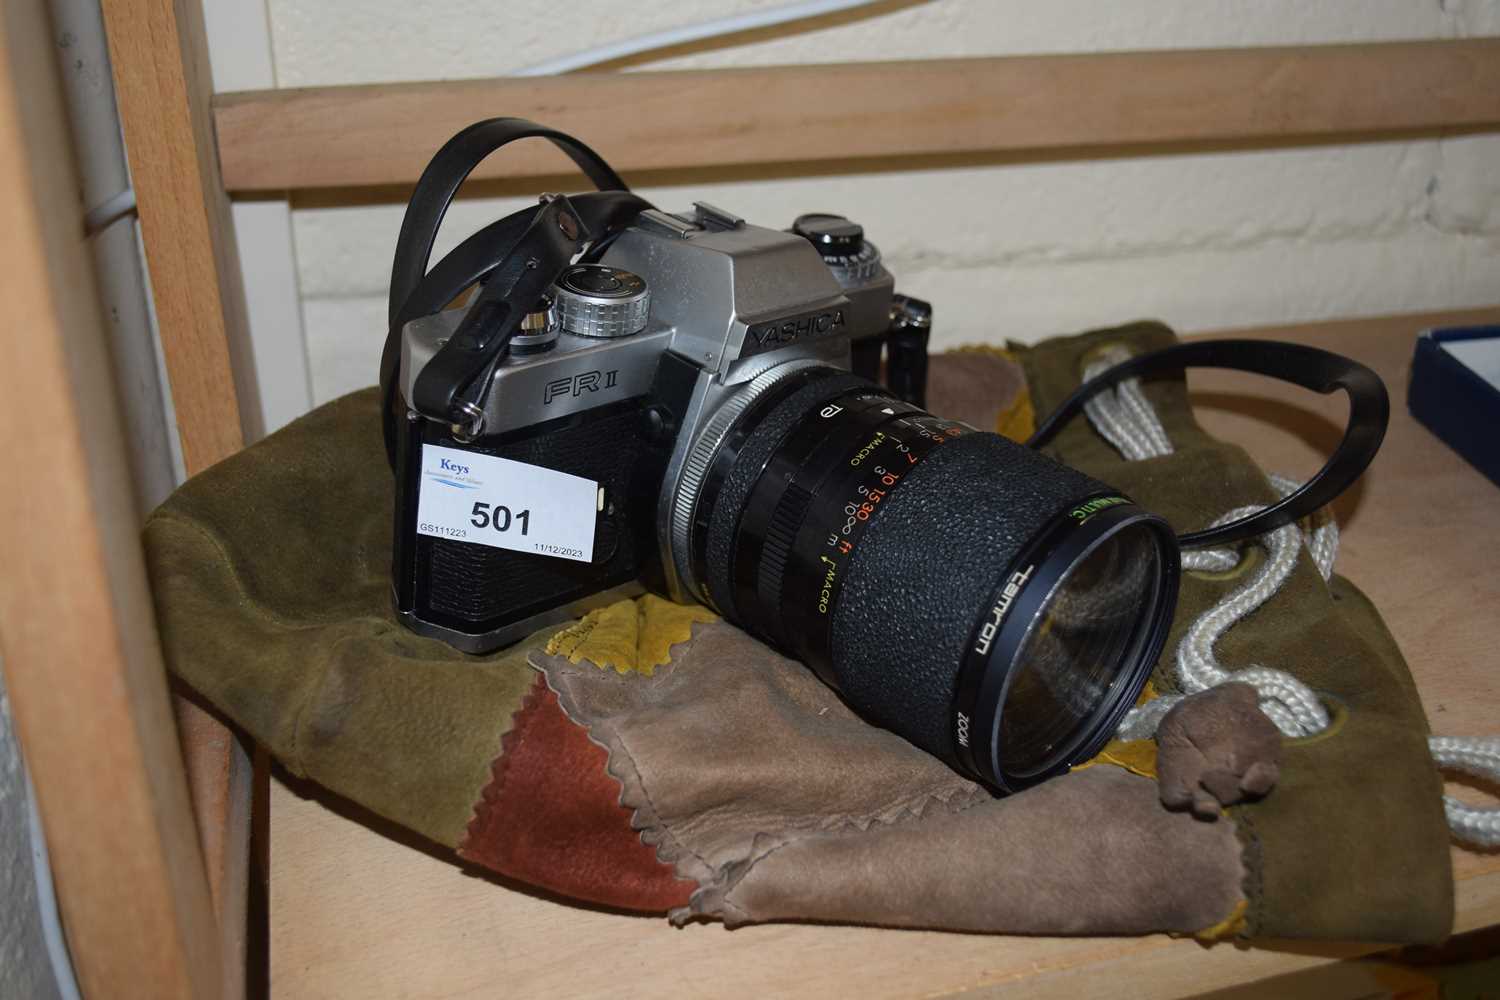 A Yashica FRII SLR camera